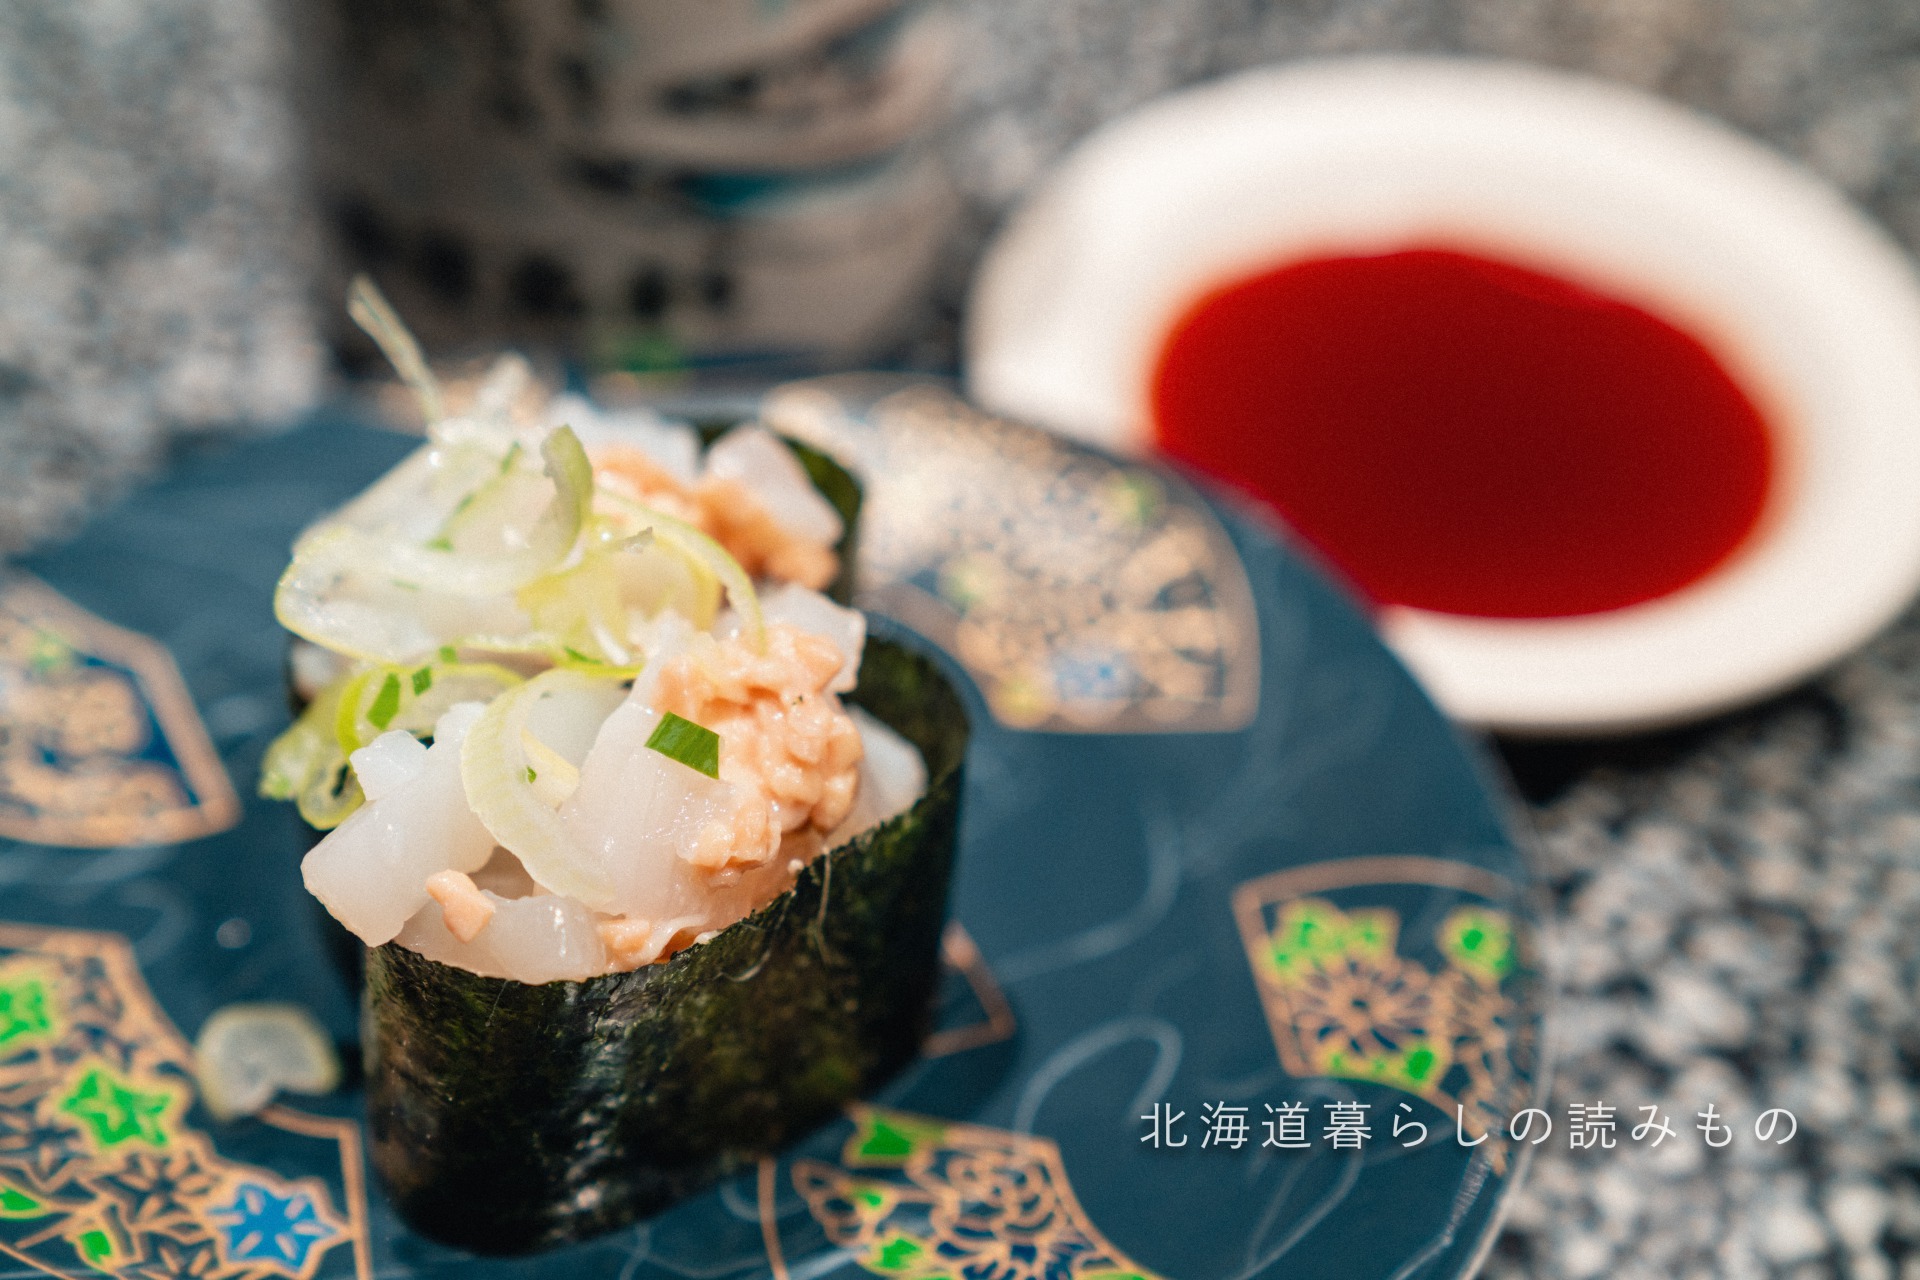 迴轉壽司根室花丸的菜單上的「Squid and Natto」